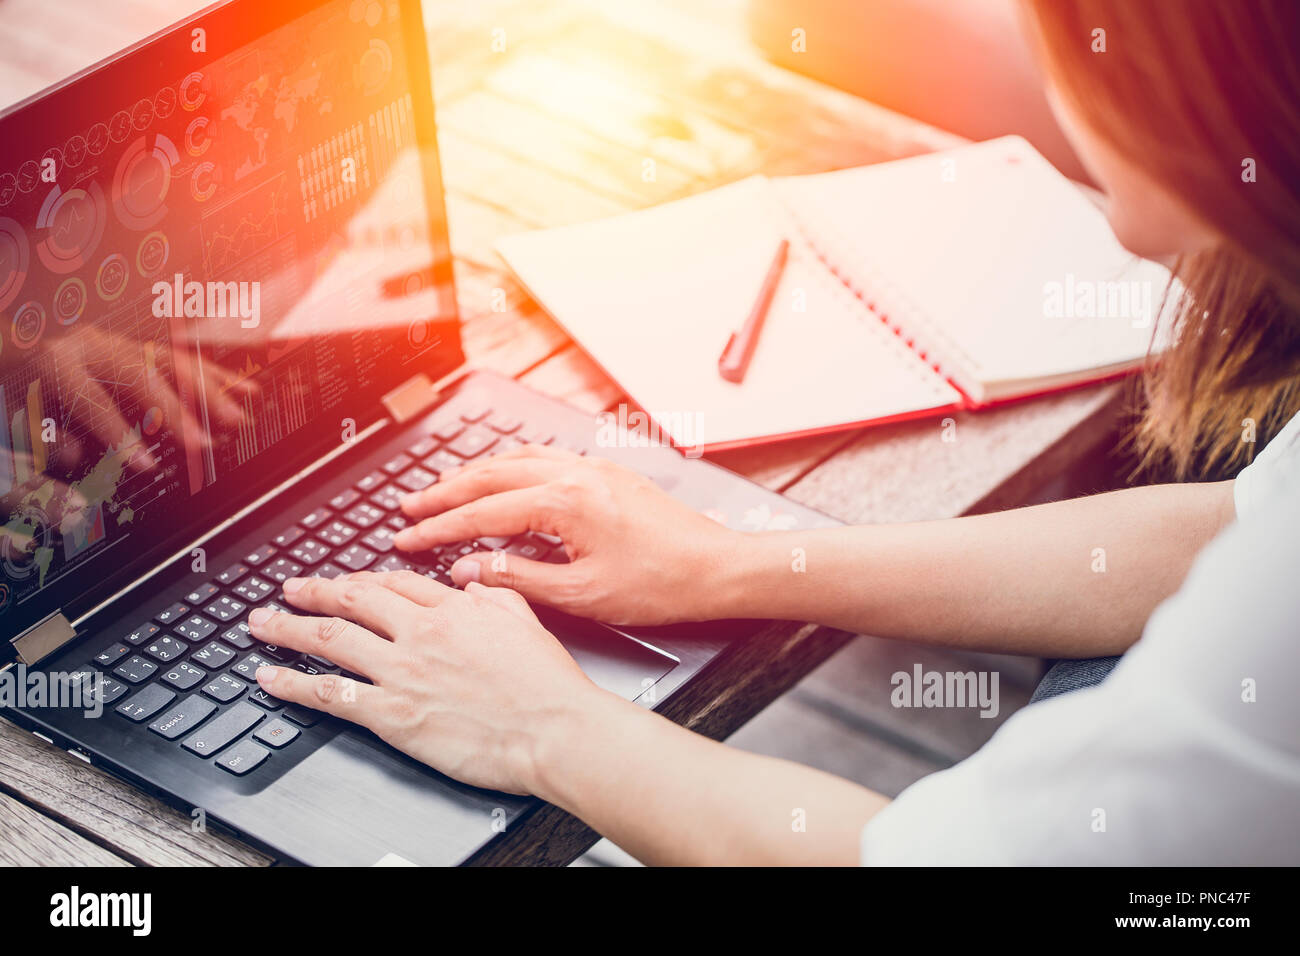 Travail Asian Business woman typing on laptop at cafe café de travail, travail de concept de démarrage. Banque D'Images